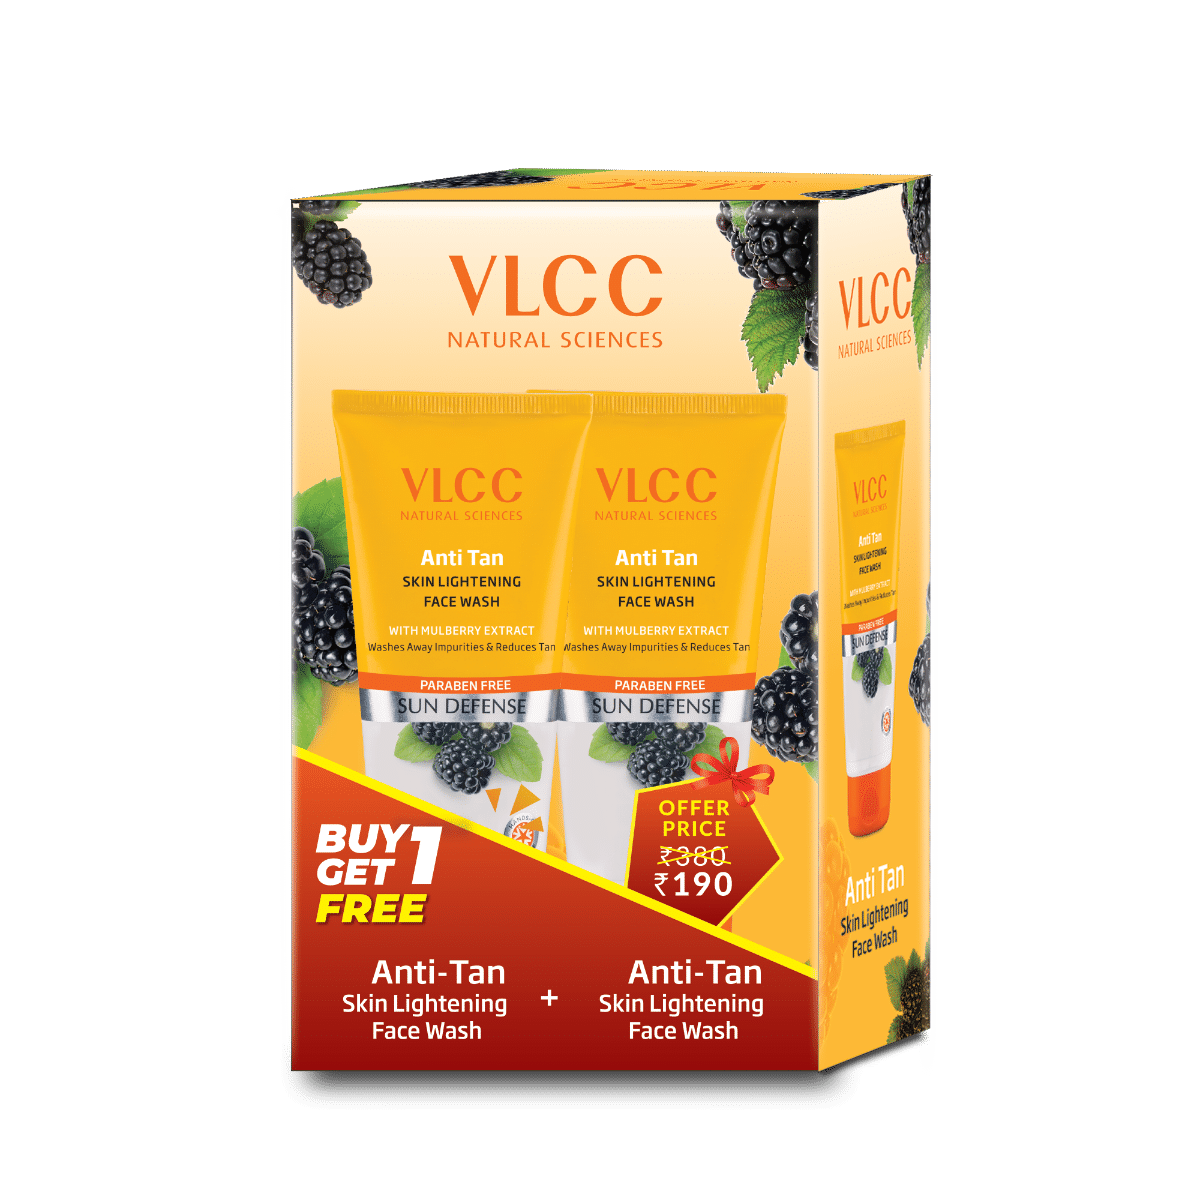 VLCC Anti-Tan Skin Lightening Face Wash, 150 gm (Buy 1 Get 1 Free), Pack of 1 